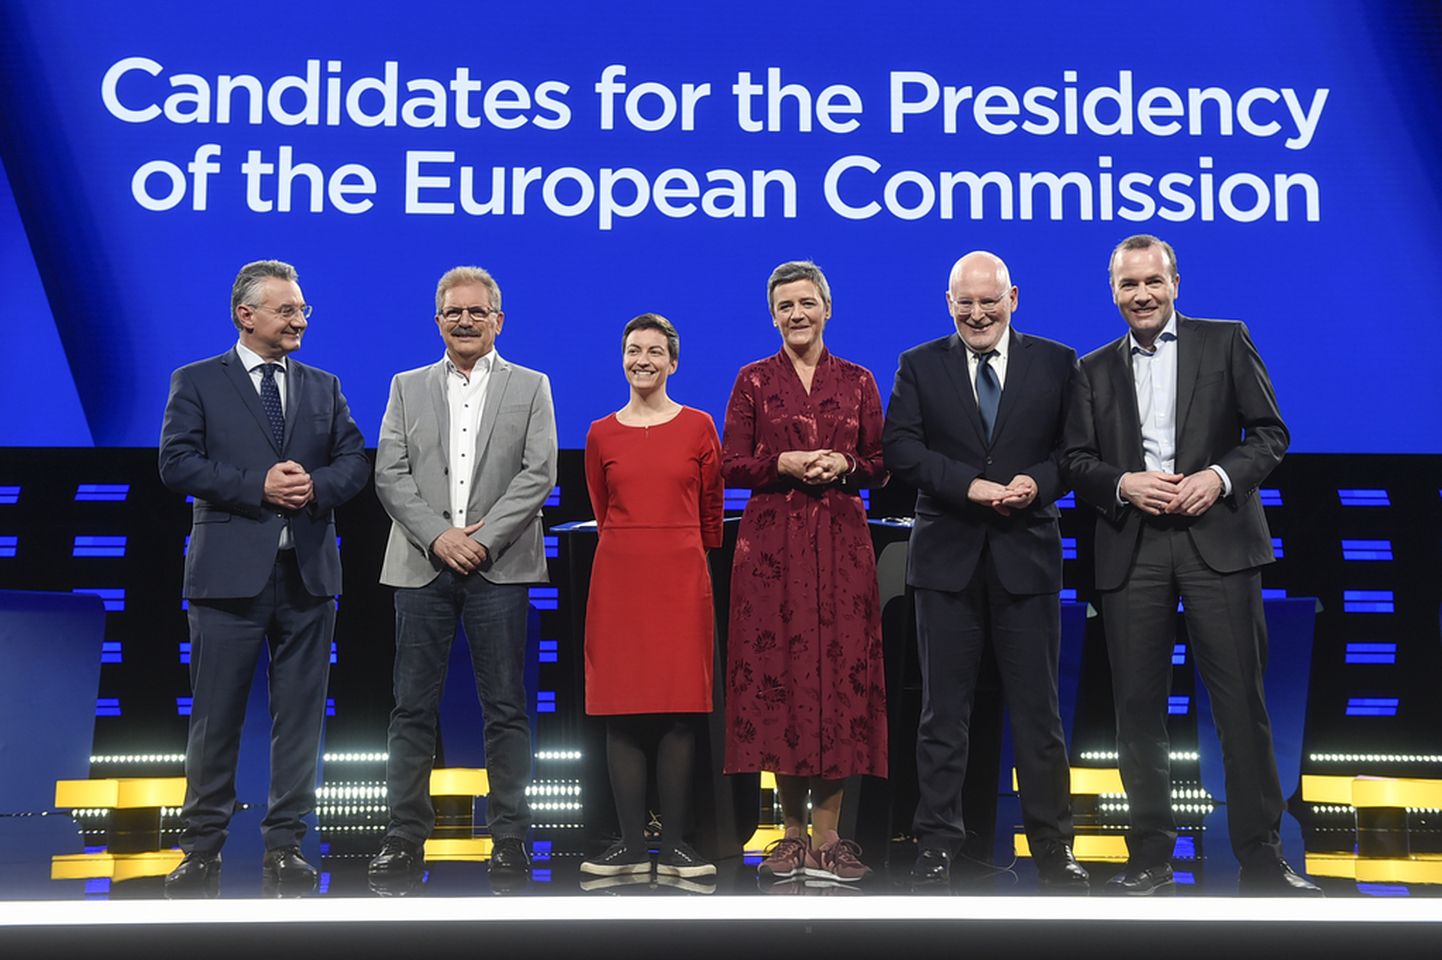 EP vēlēšanu vadošie kandidāti (no kreisās uz labo): Jans Zahradils, Niko Kijē, Ska Kellere, Margrēte Vestagera, Frans Timmermans, Manfreds Vēbers. © European union 2019